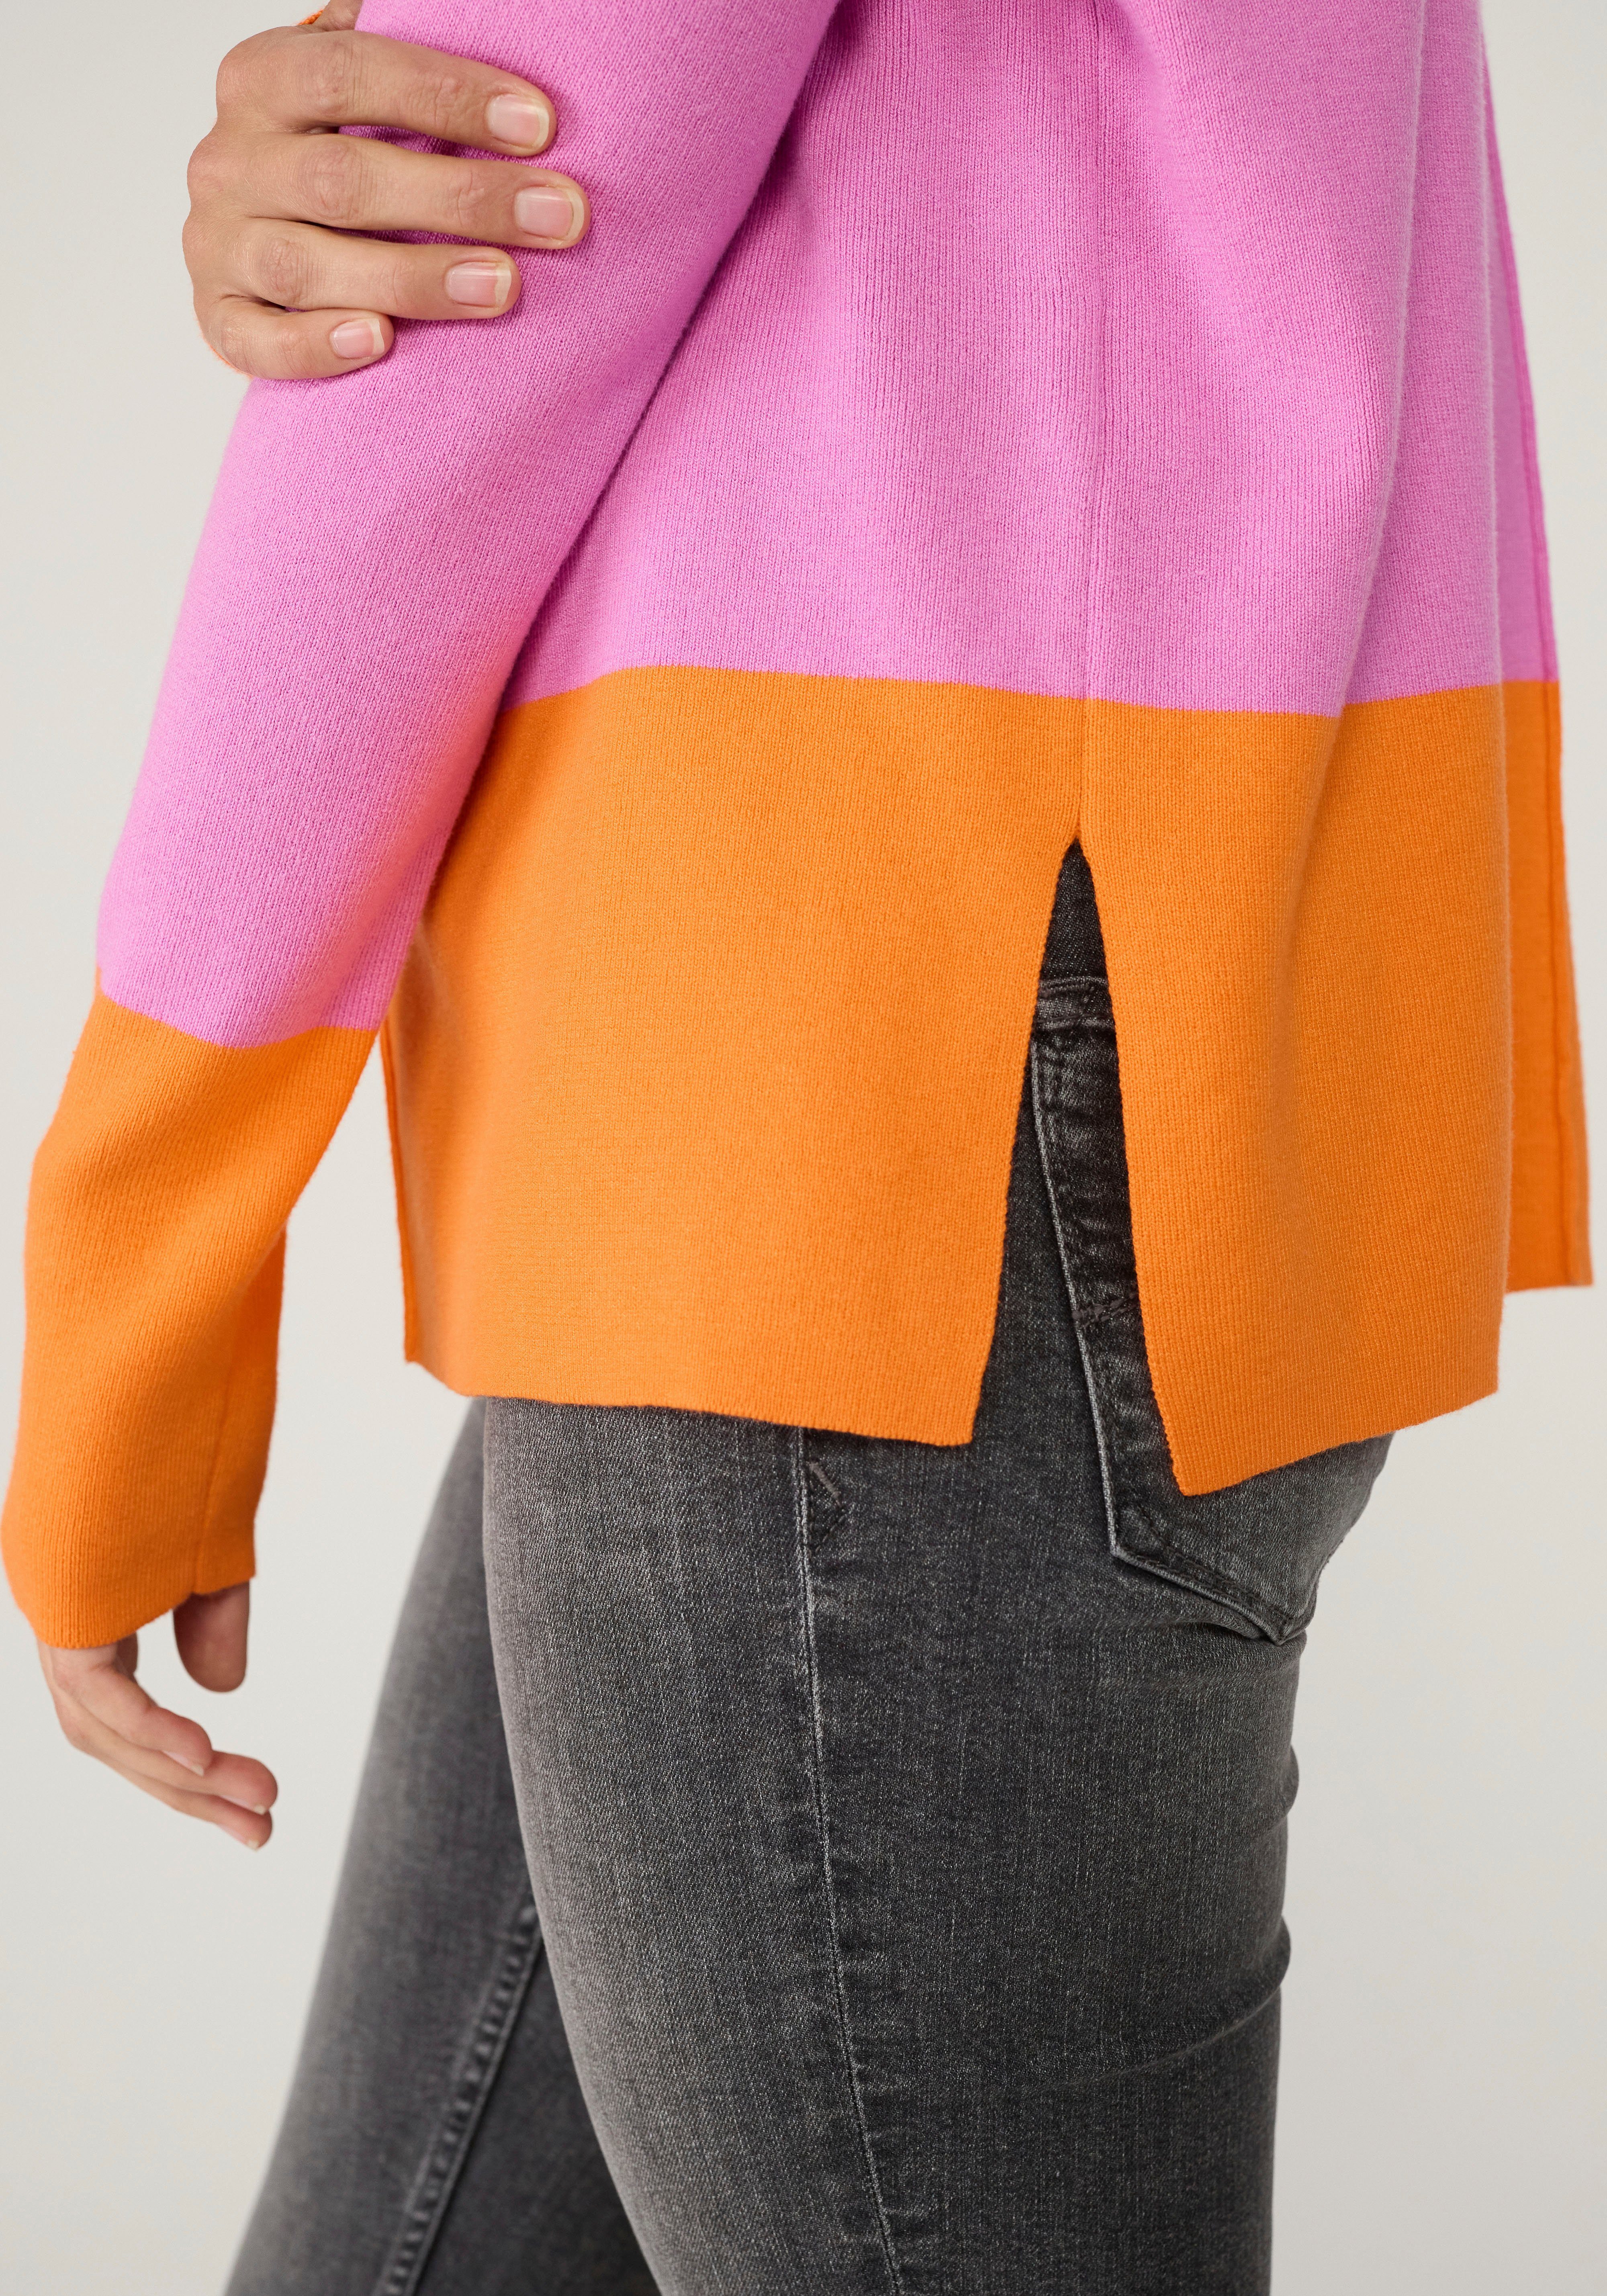 Lieblingsstück Strickpullover Pullover orange Farbeinsatz pink KristieEP mit